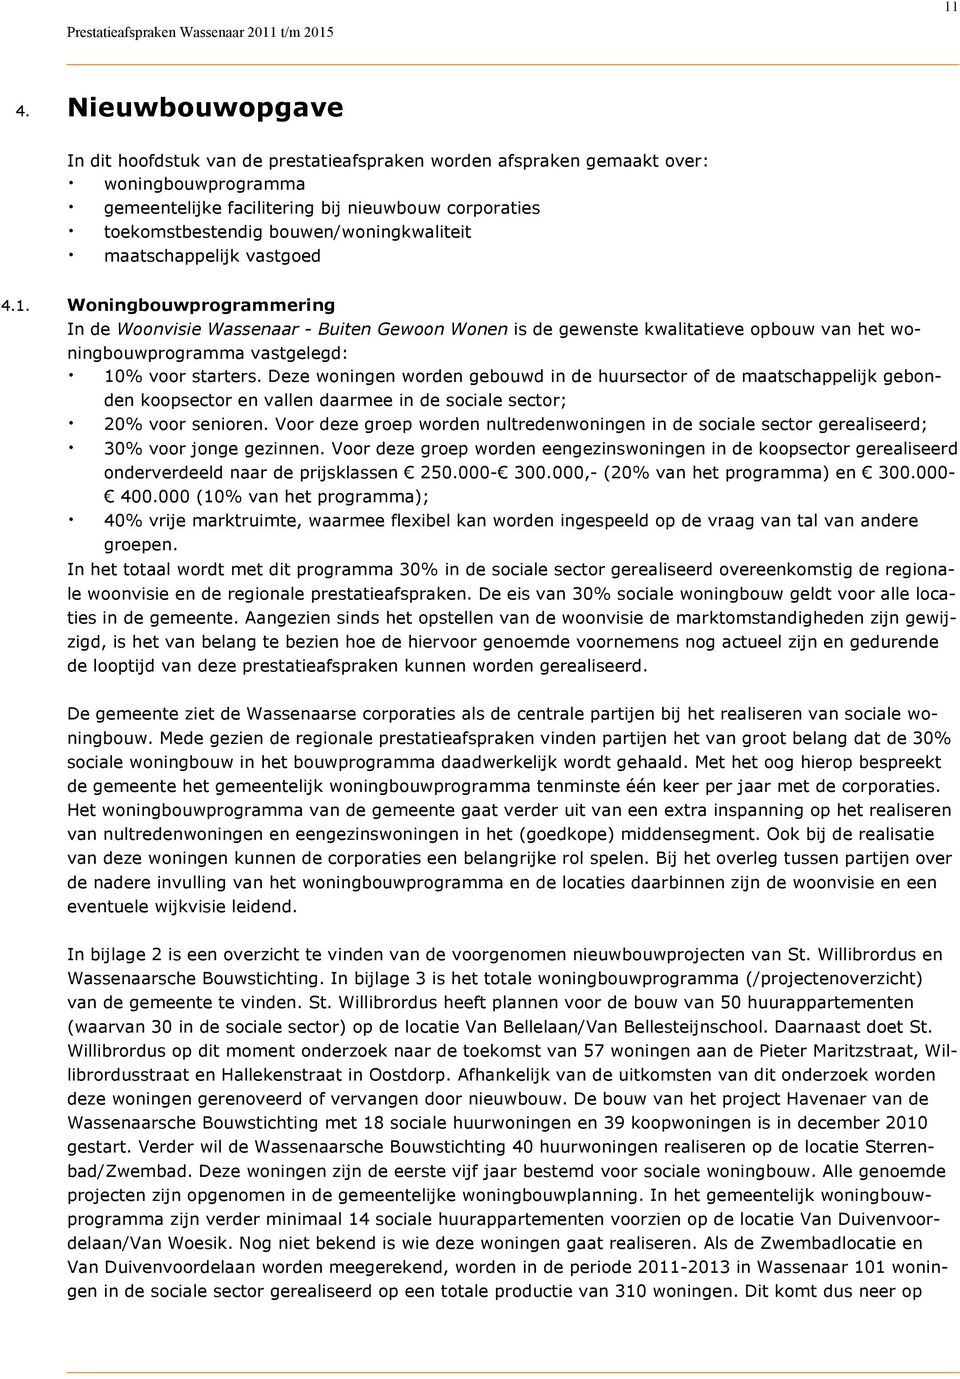 Woningbouwprogrammering In de Woonvisie Wassenaar - Buiten Gewoon Wonen is de gewenste kwalitatieve opbouw van het woningbouwprogramma vastgelegd:. 10% voor starters.